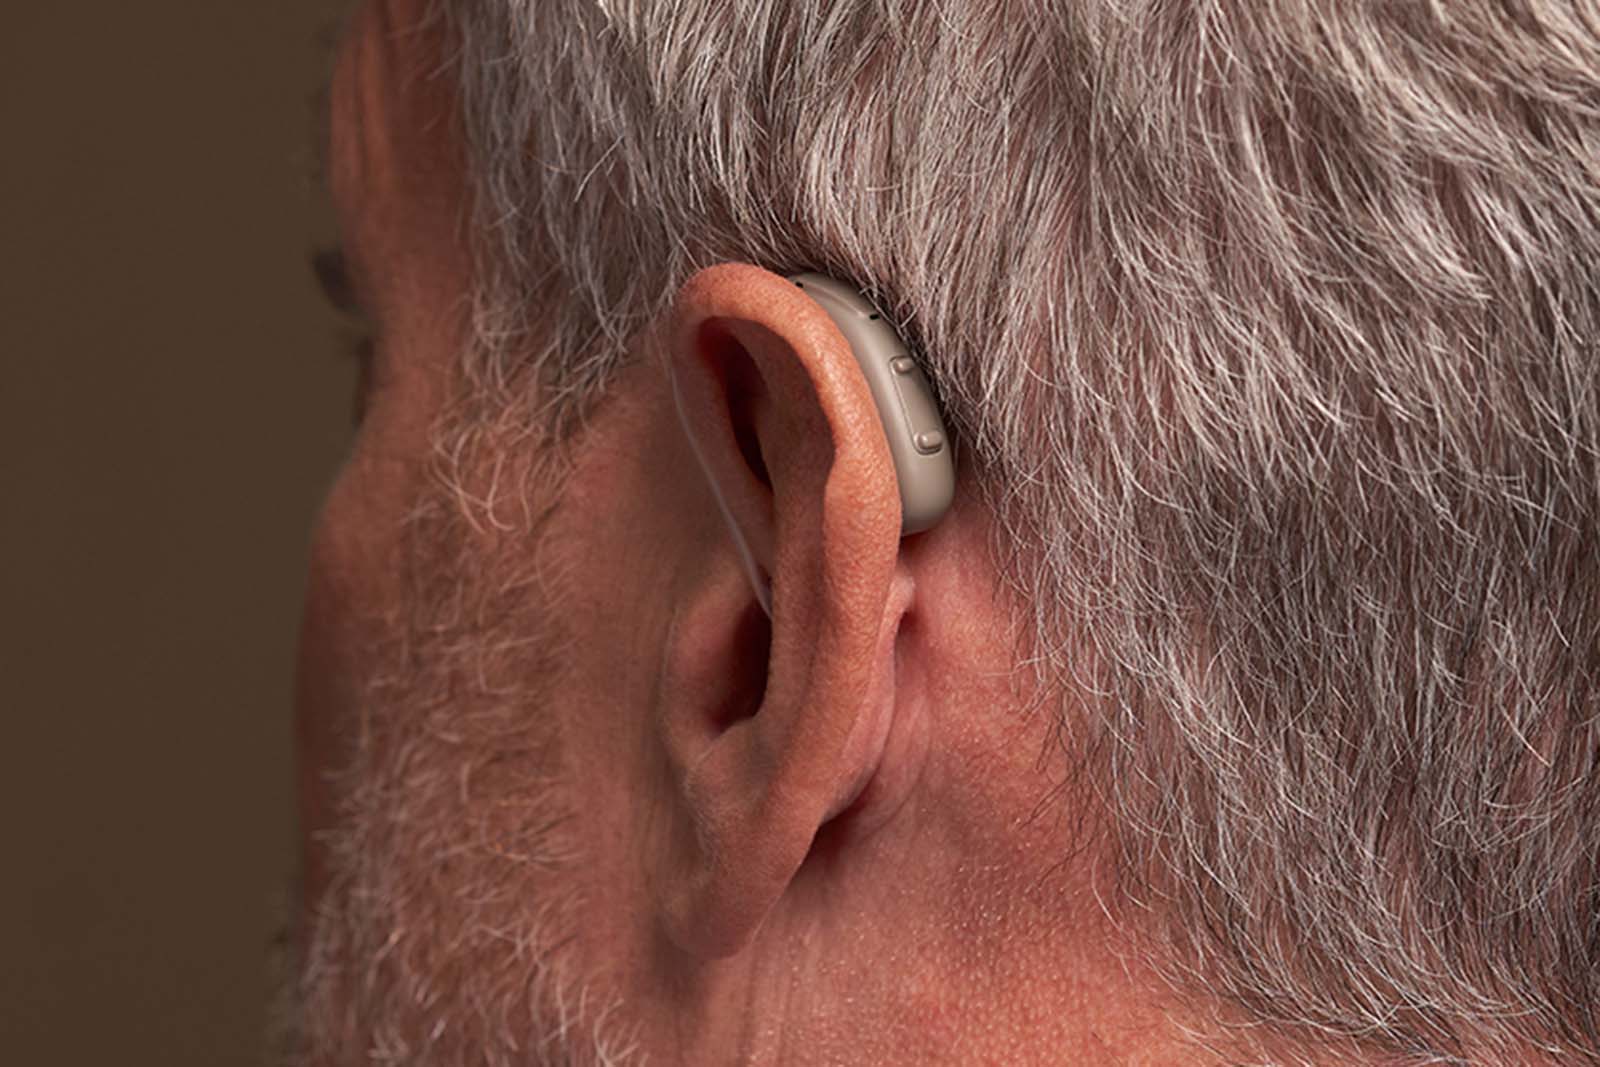 Man wearing Rexton BiCore Rugged hearing aid